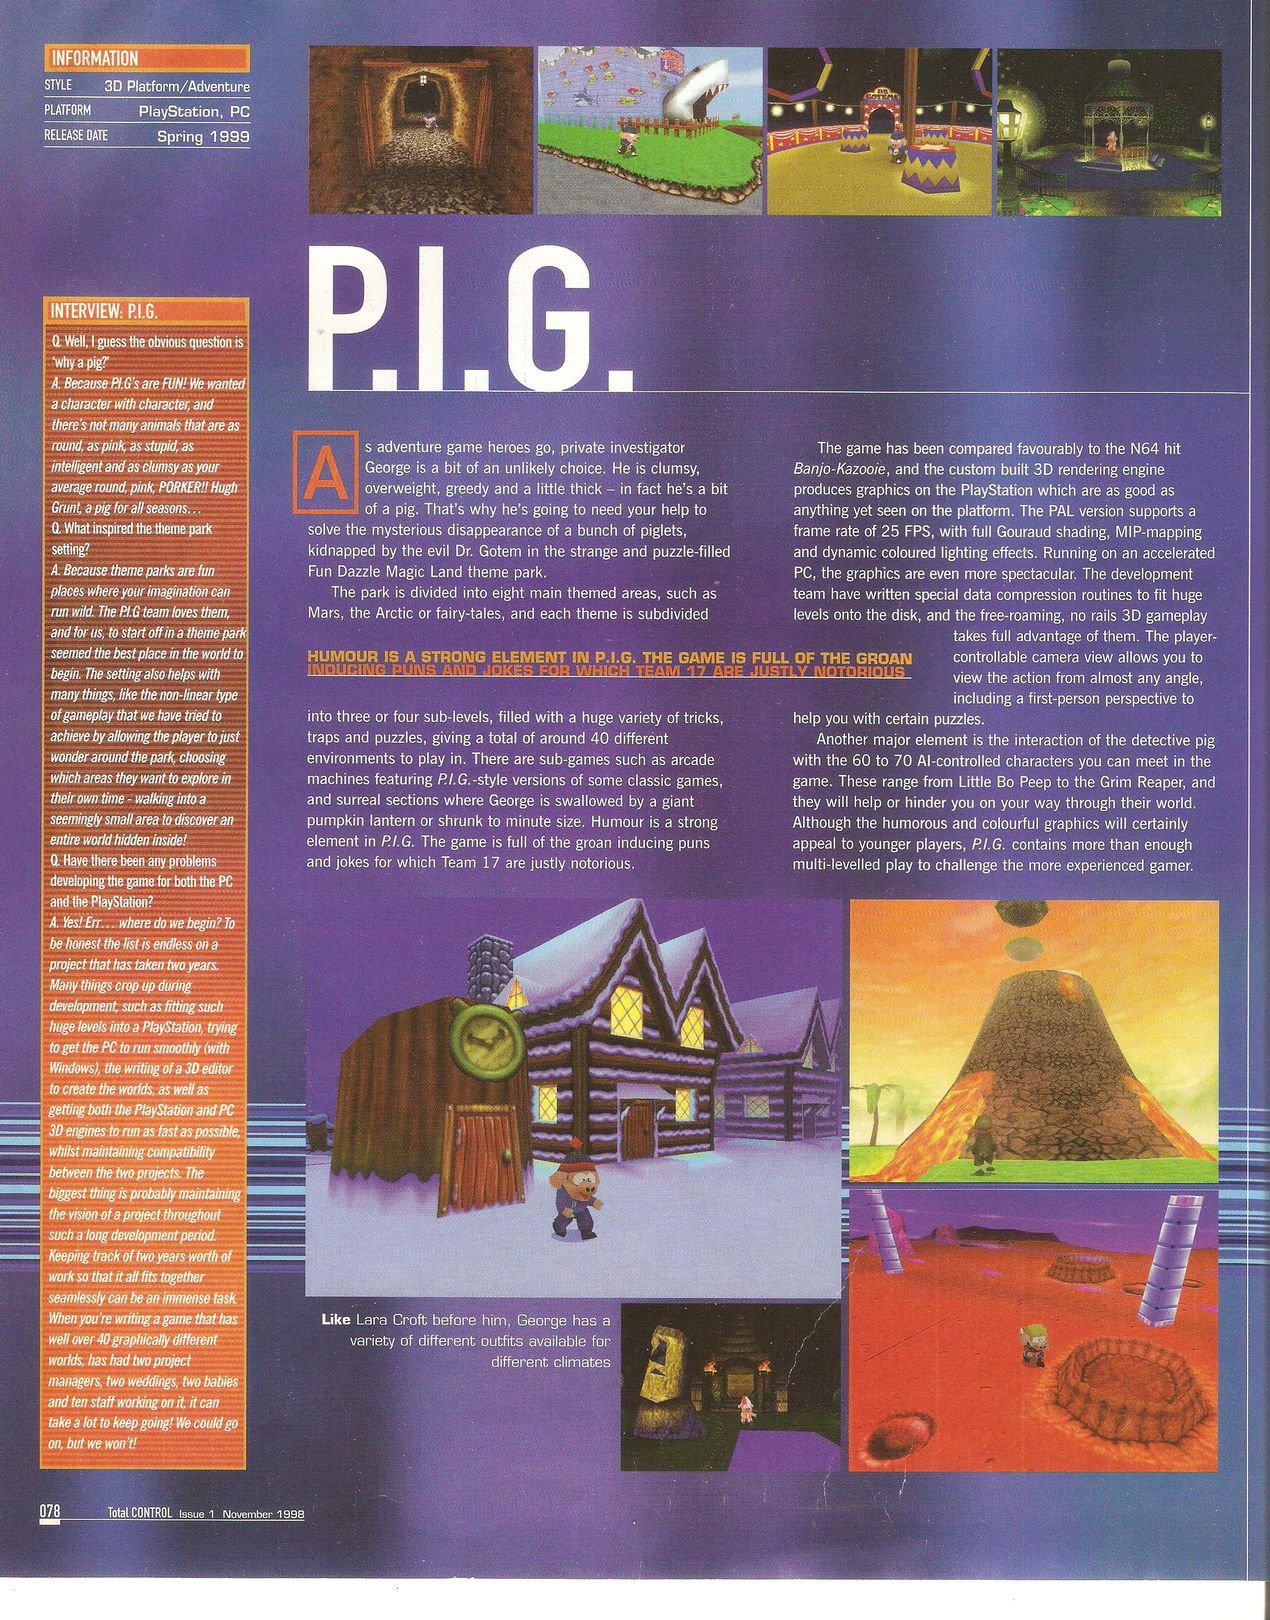 PIG-team17-platform-game.jpg